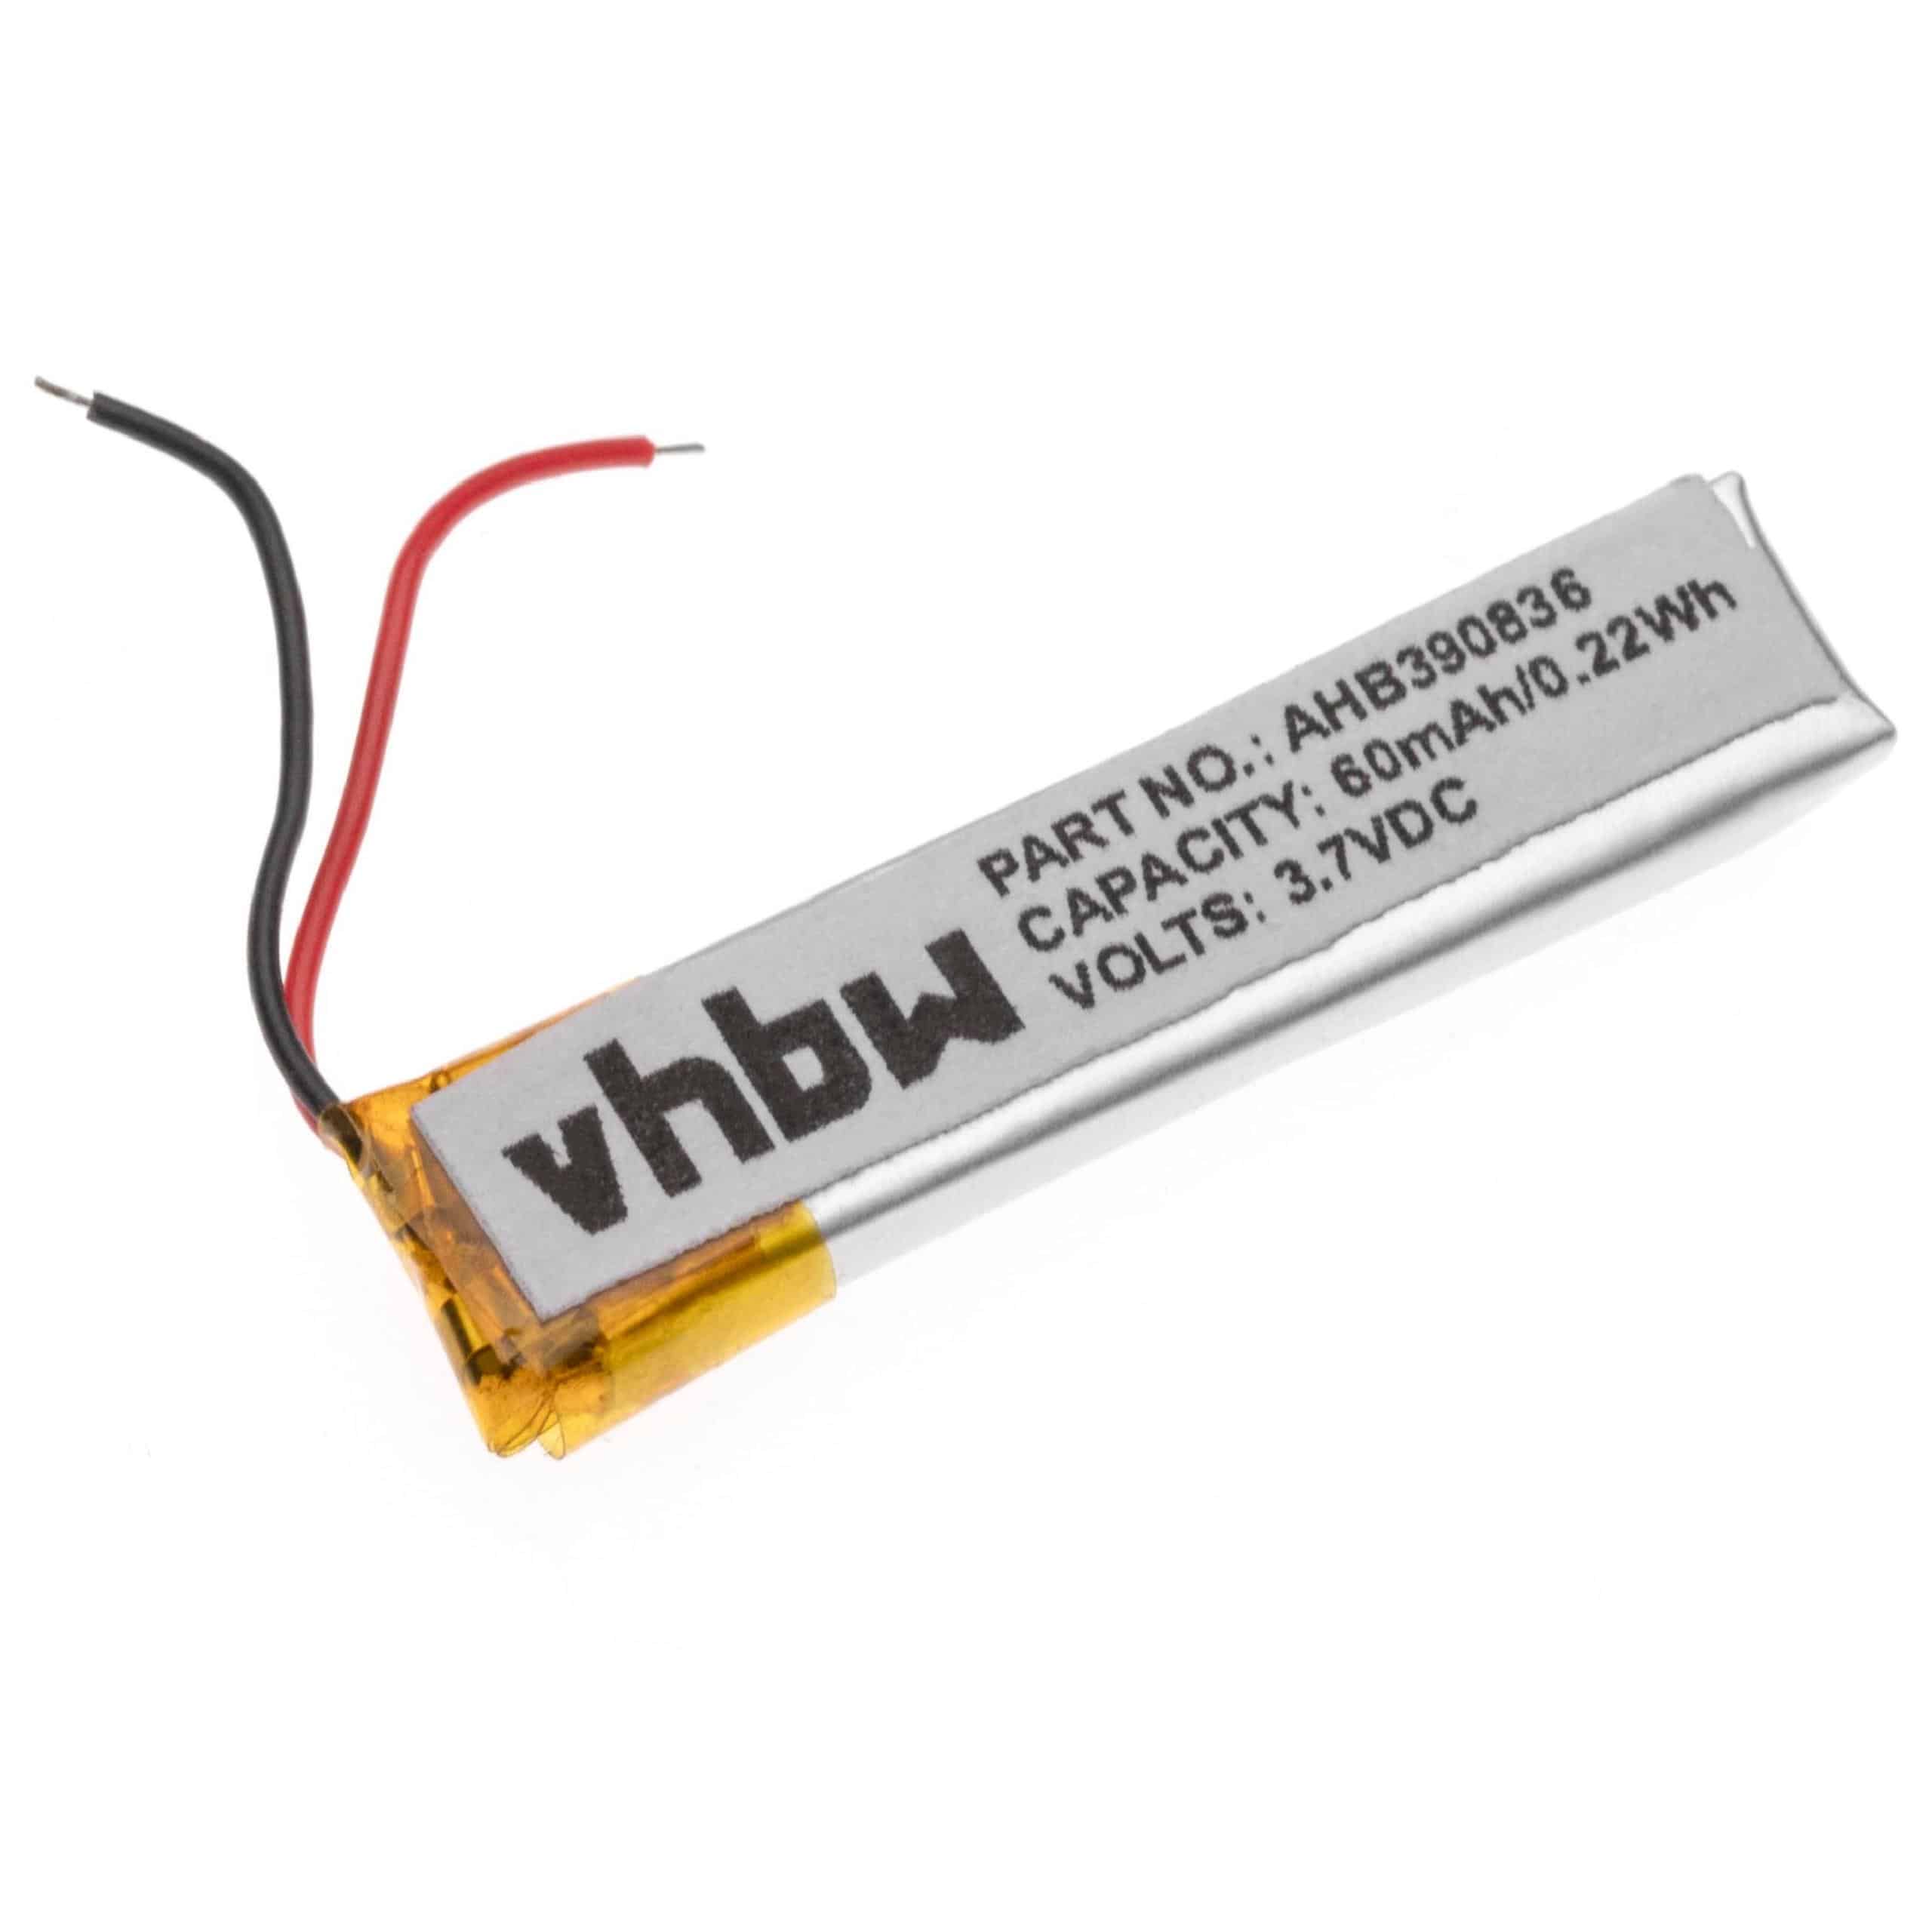 Batterie remplace Jabra CPL-556, B350735, AHB390836, HS-11 pour casque audio - 60mAh 3,7V Li-polymère